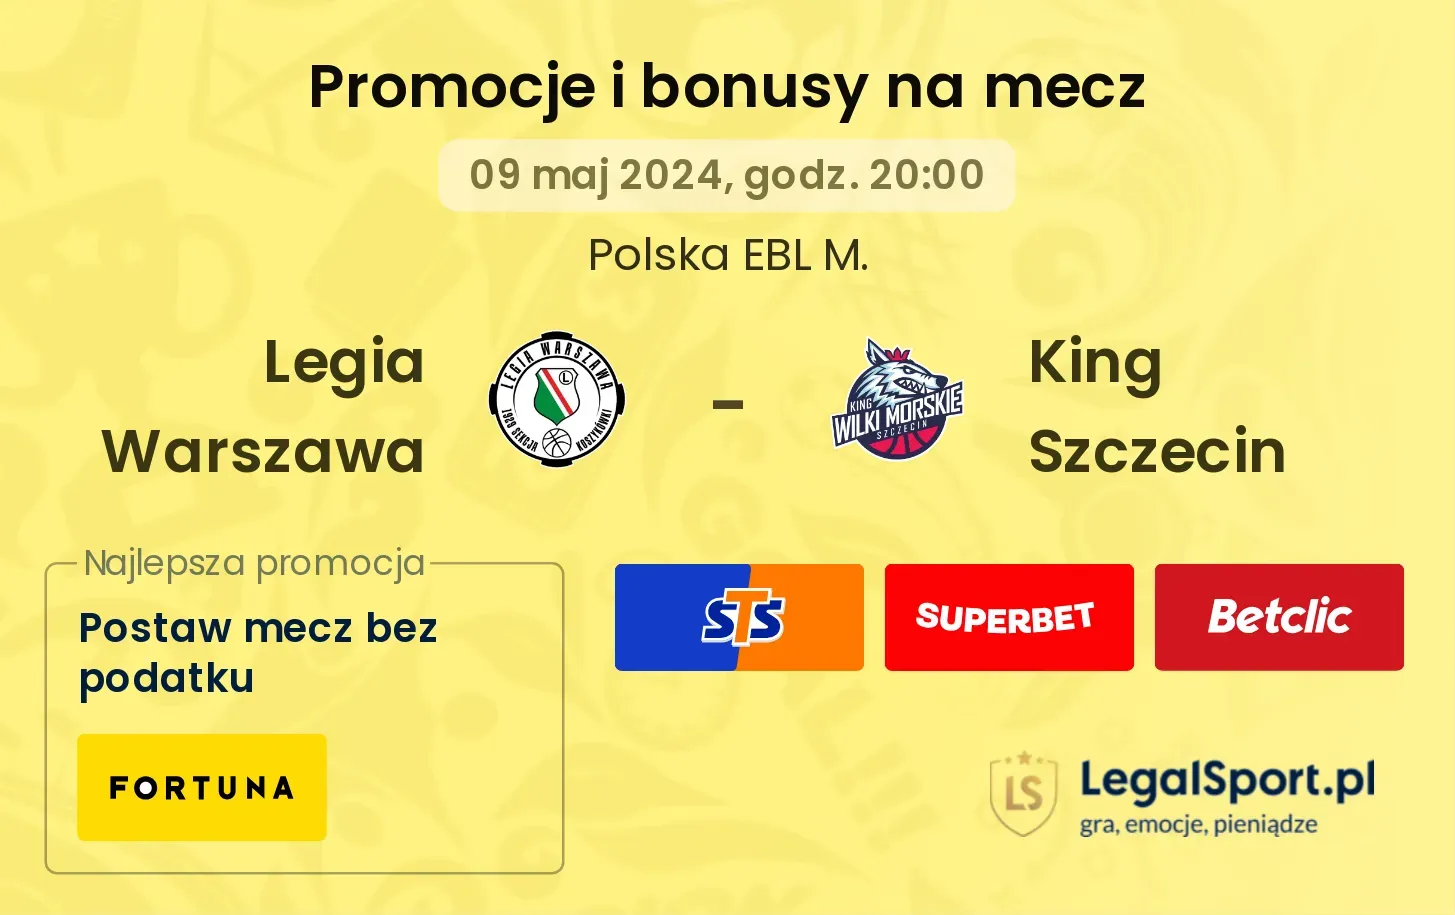 Legia Warszawa - King Szczecin bonusy i promocje (09.05, 20:00)